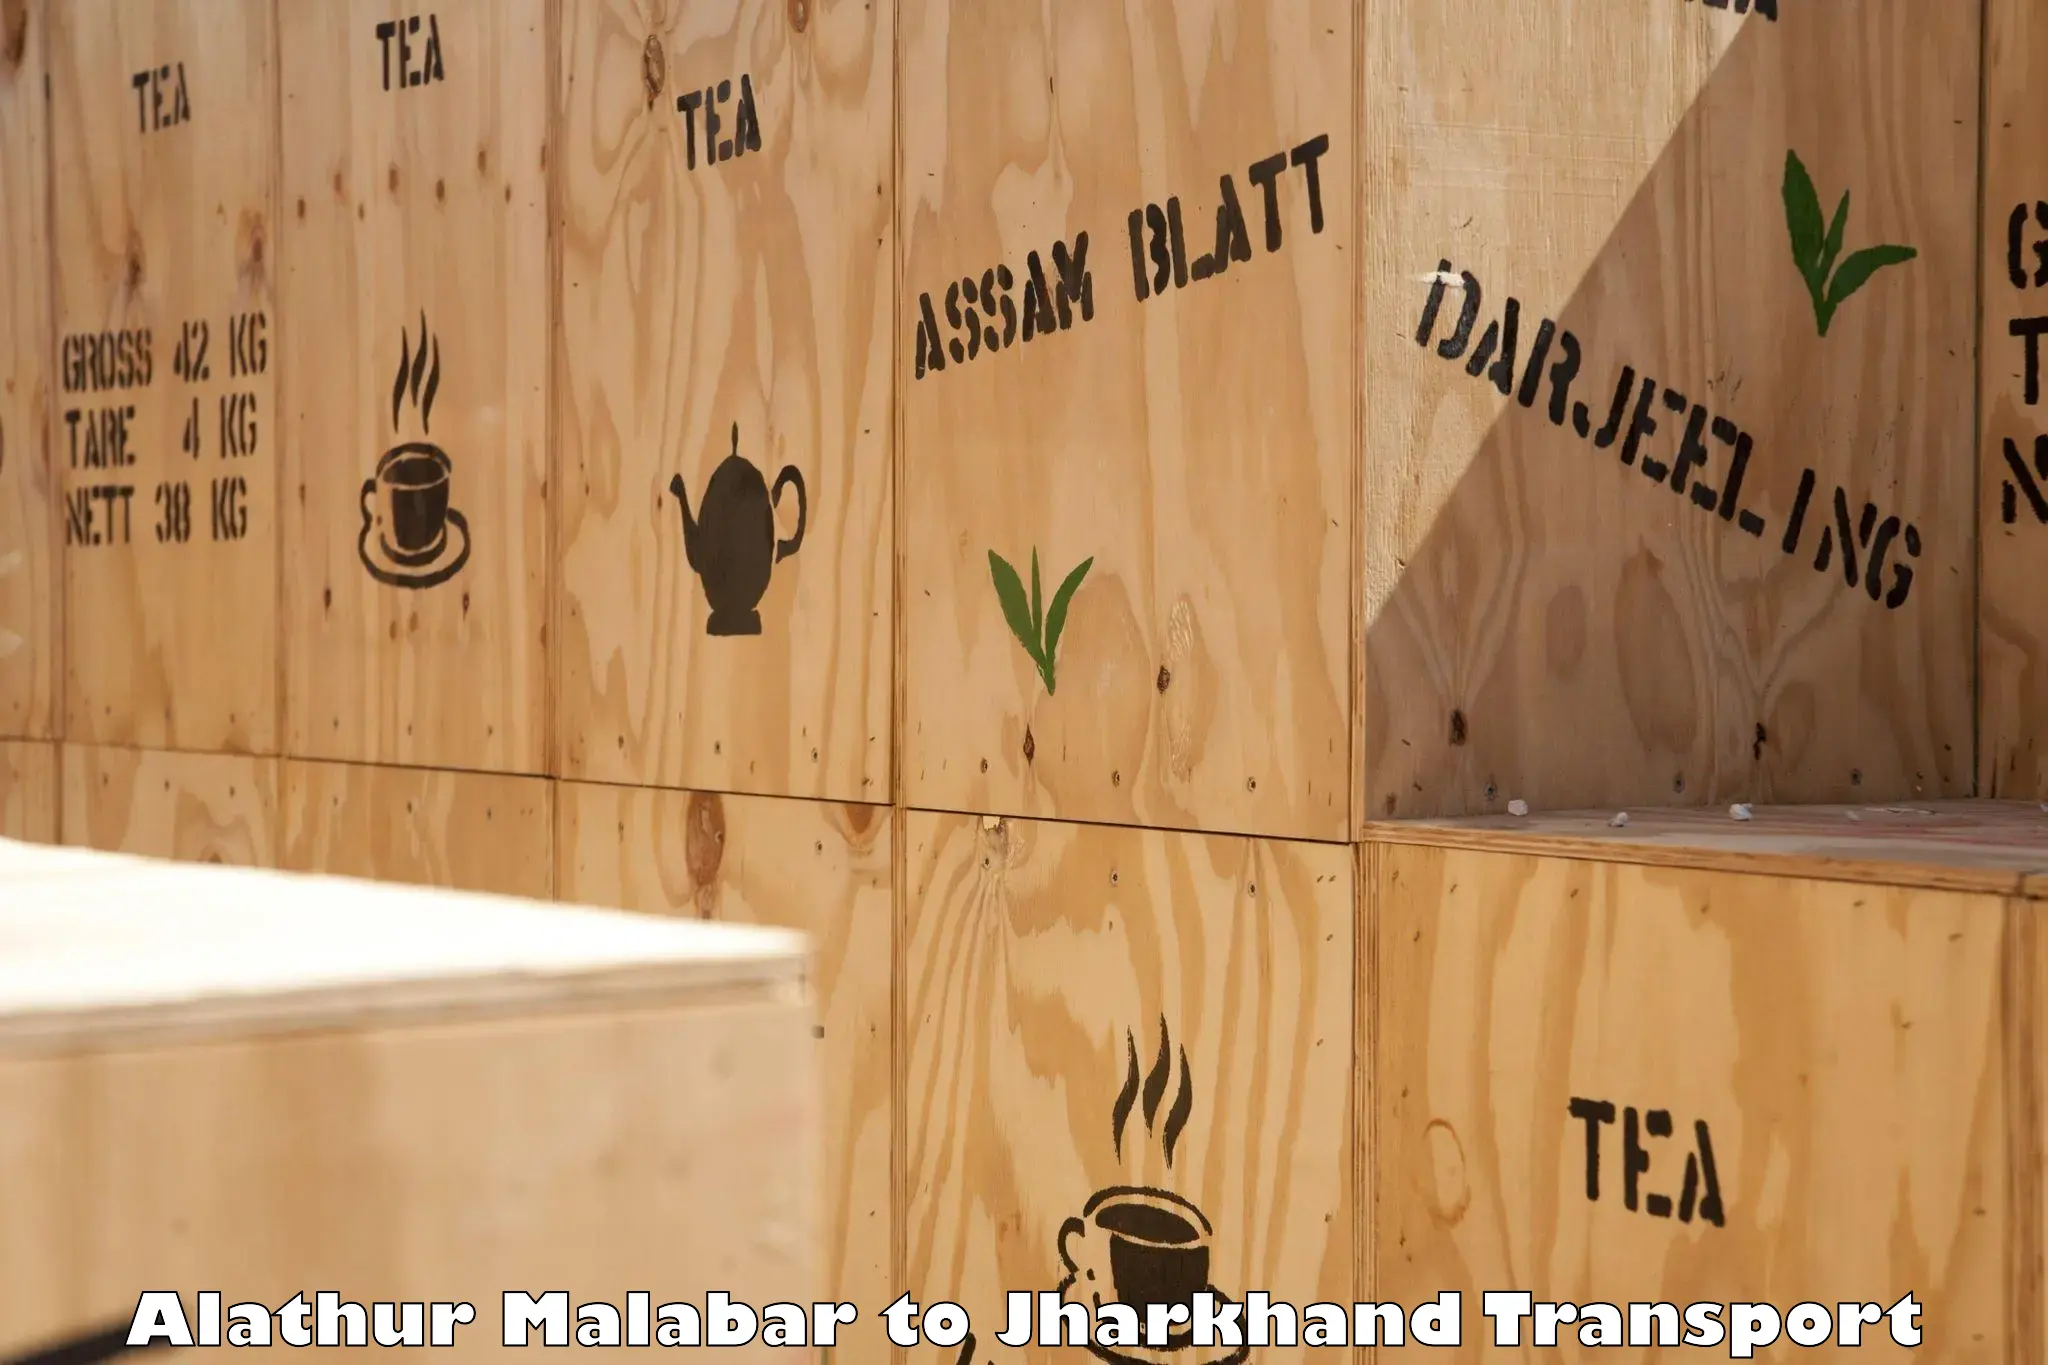 Shipping partner Alathur Malabar to Tandwa